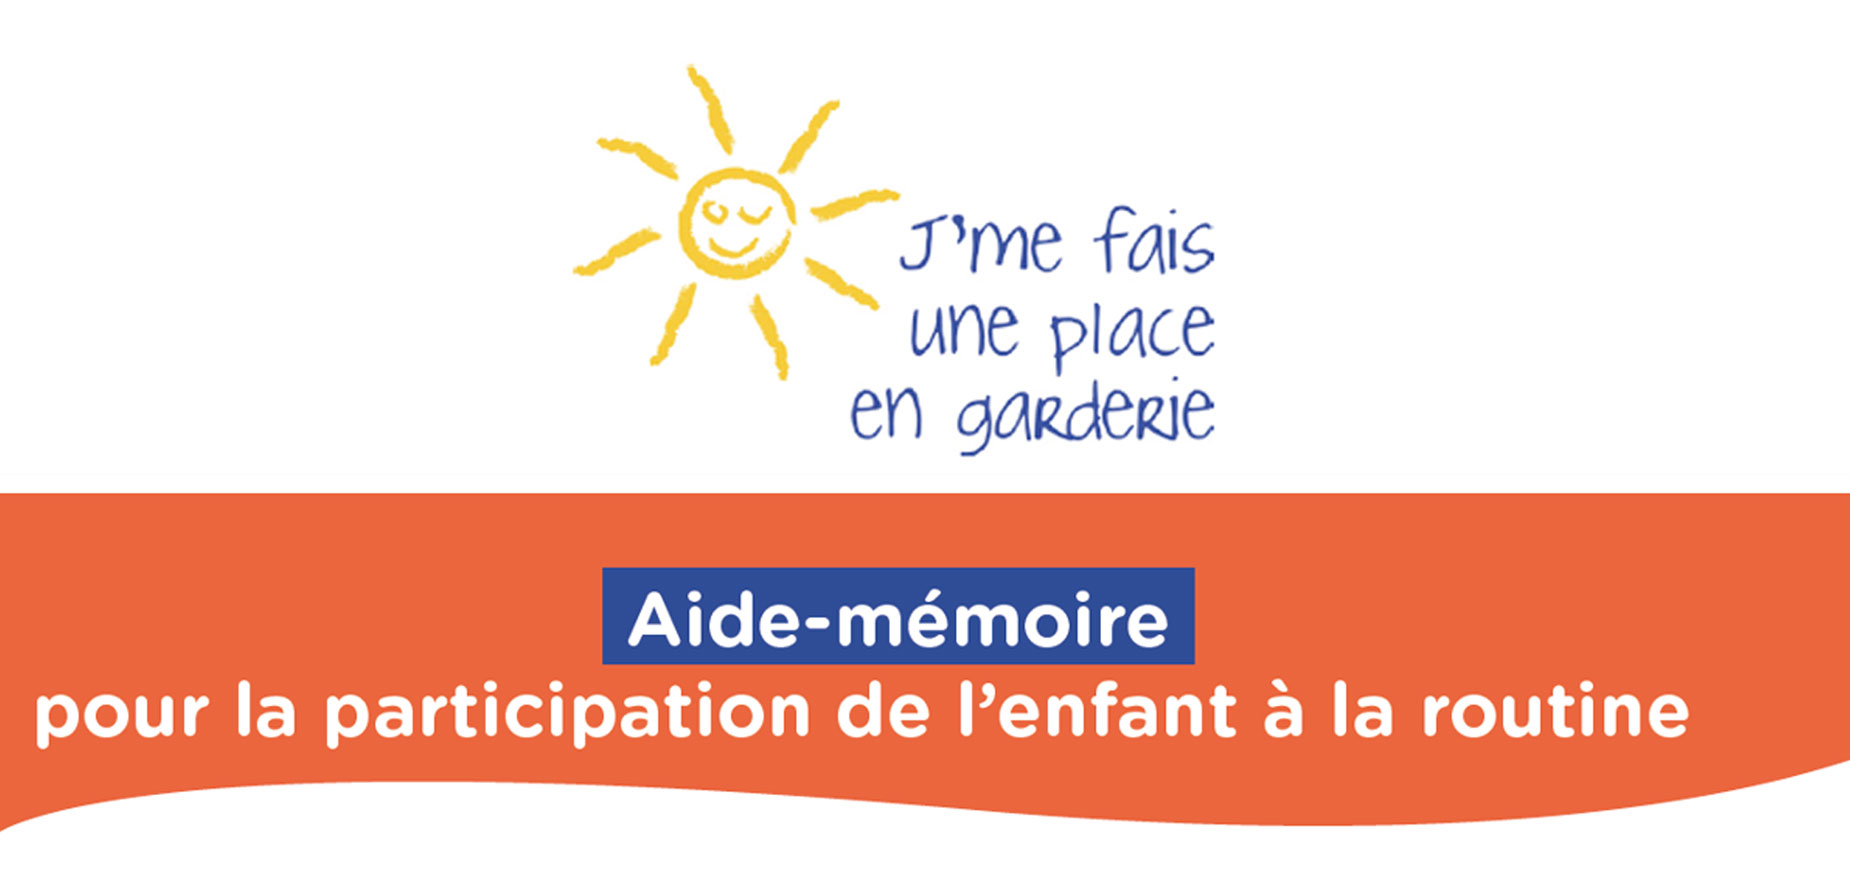 Aide-mémoire pour la participation de l’enfant à la routine (FR)